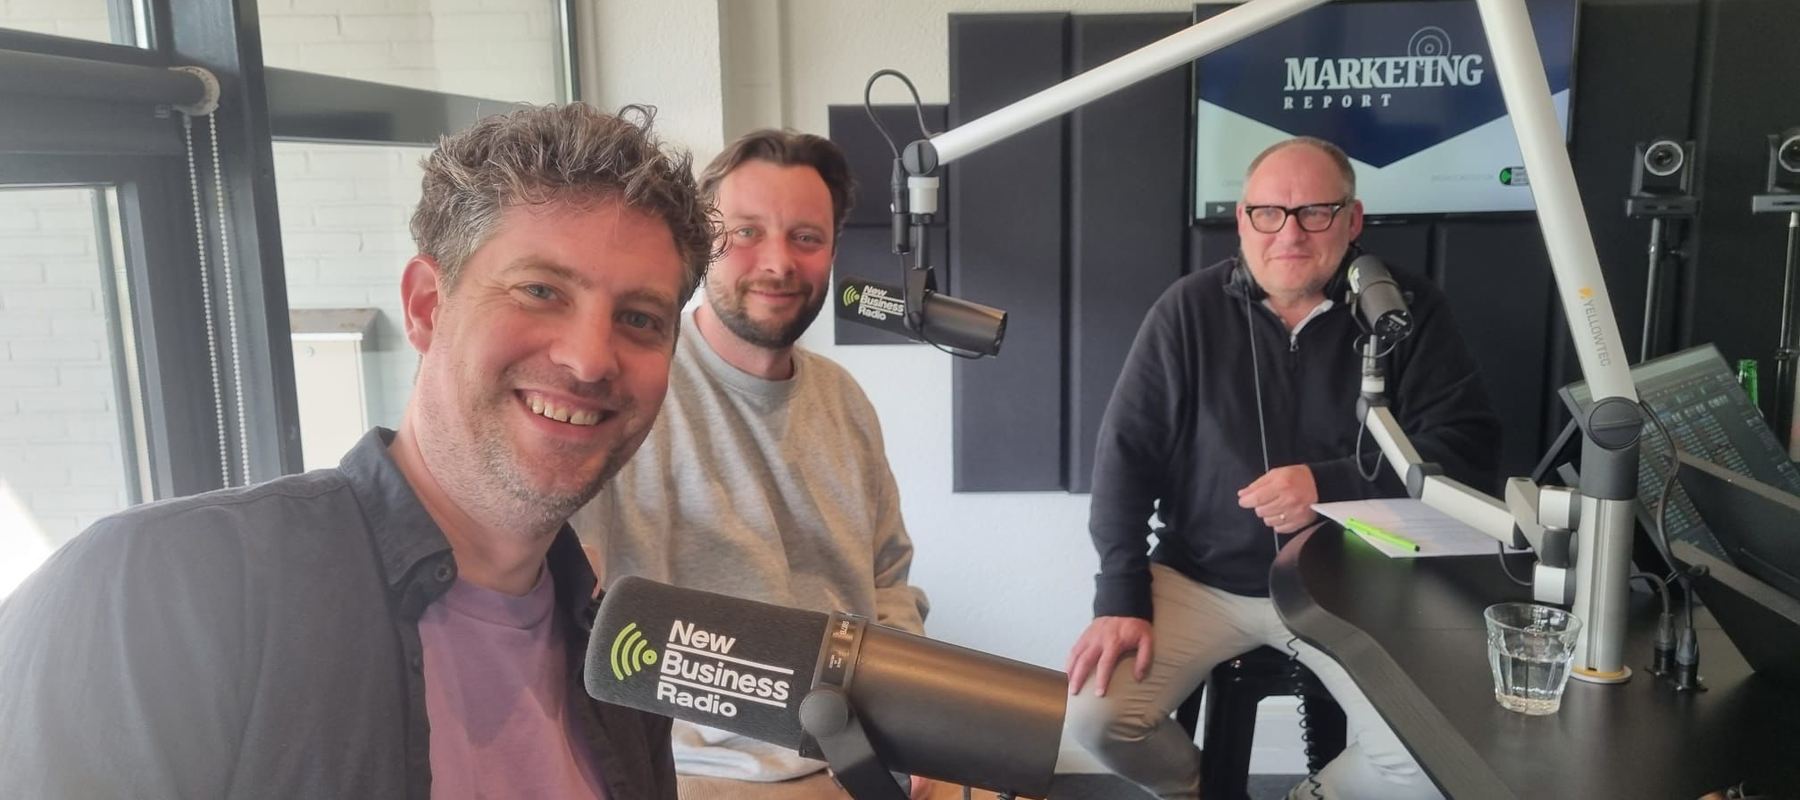 [MarketingReport Radio] Tim de Waard en Daniel Samama over Cheil Benelux